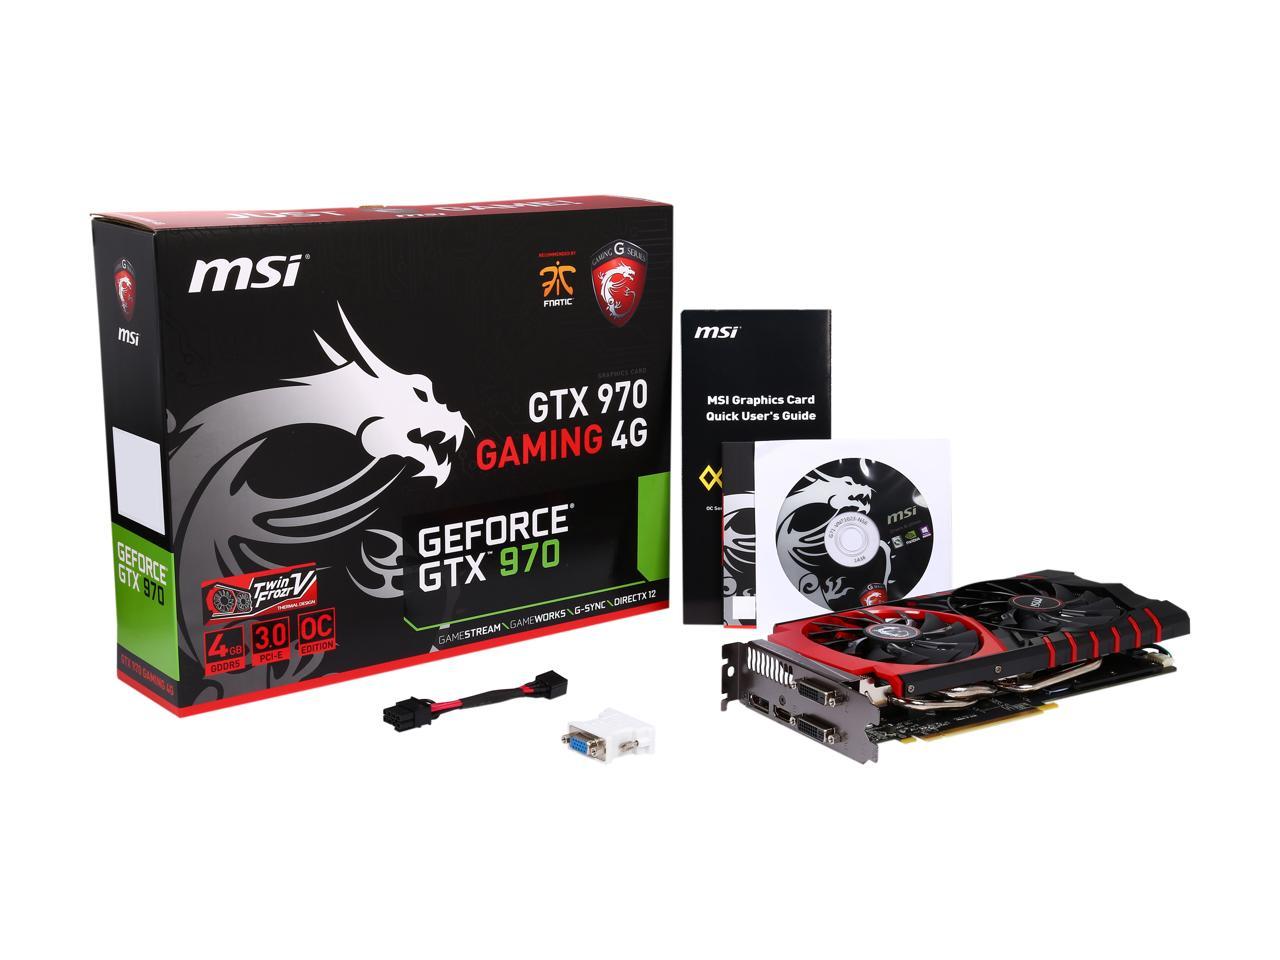 Msi Geforce Gtx 970 Gaming 4G